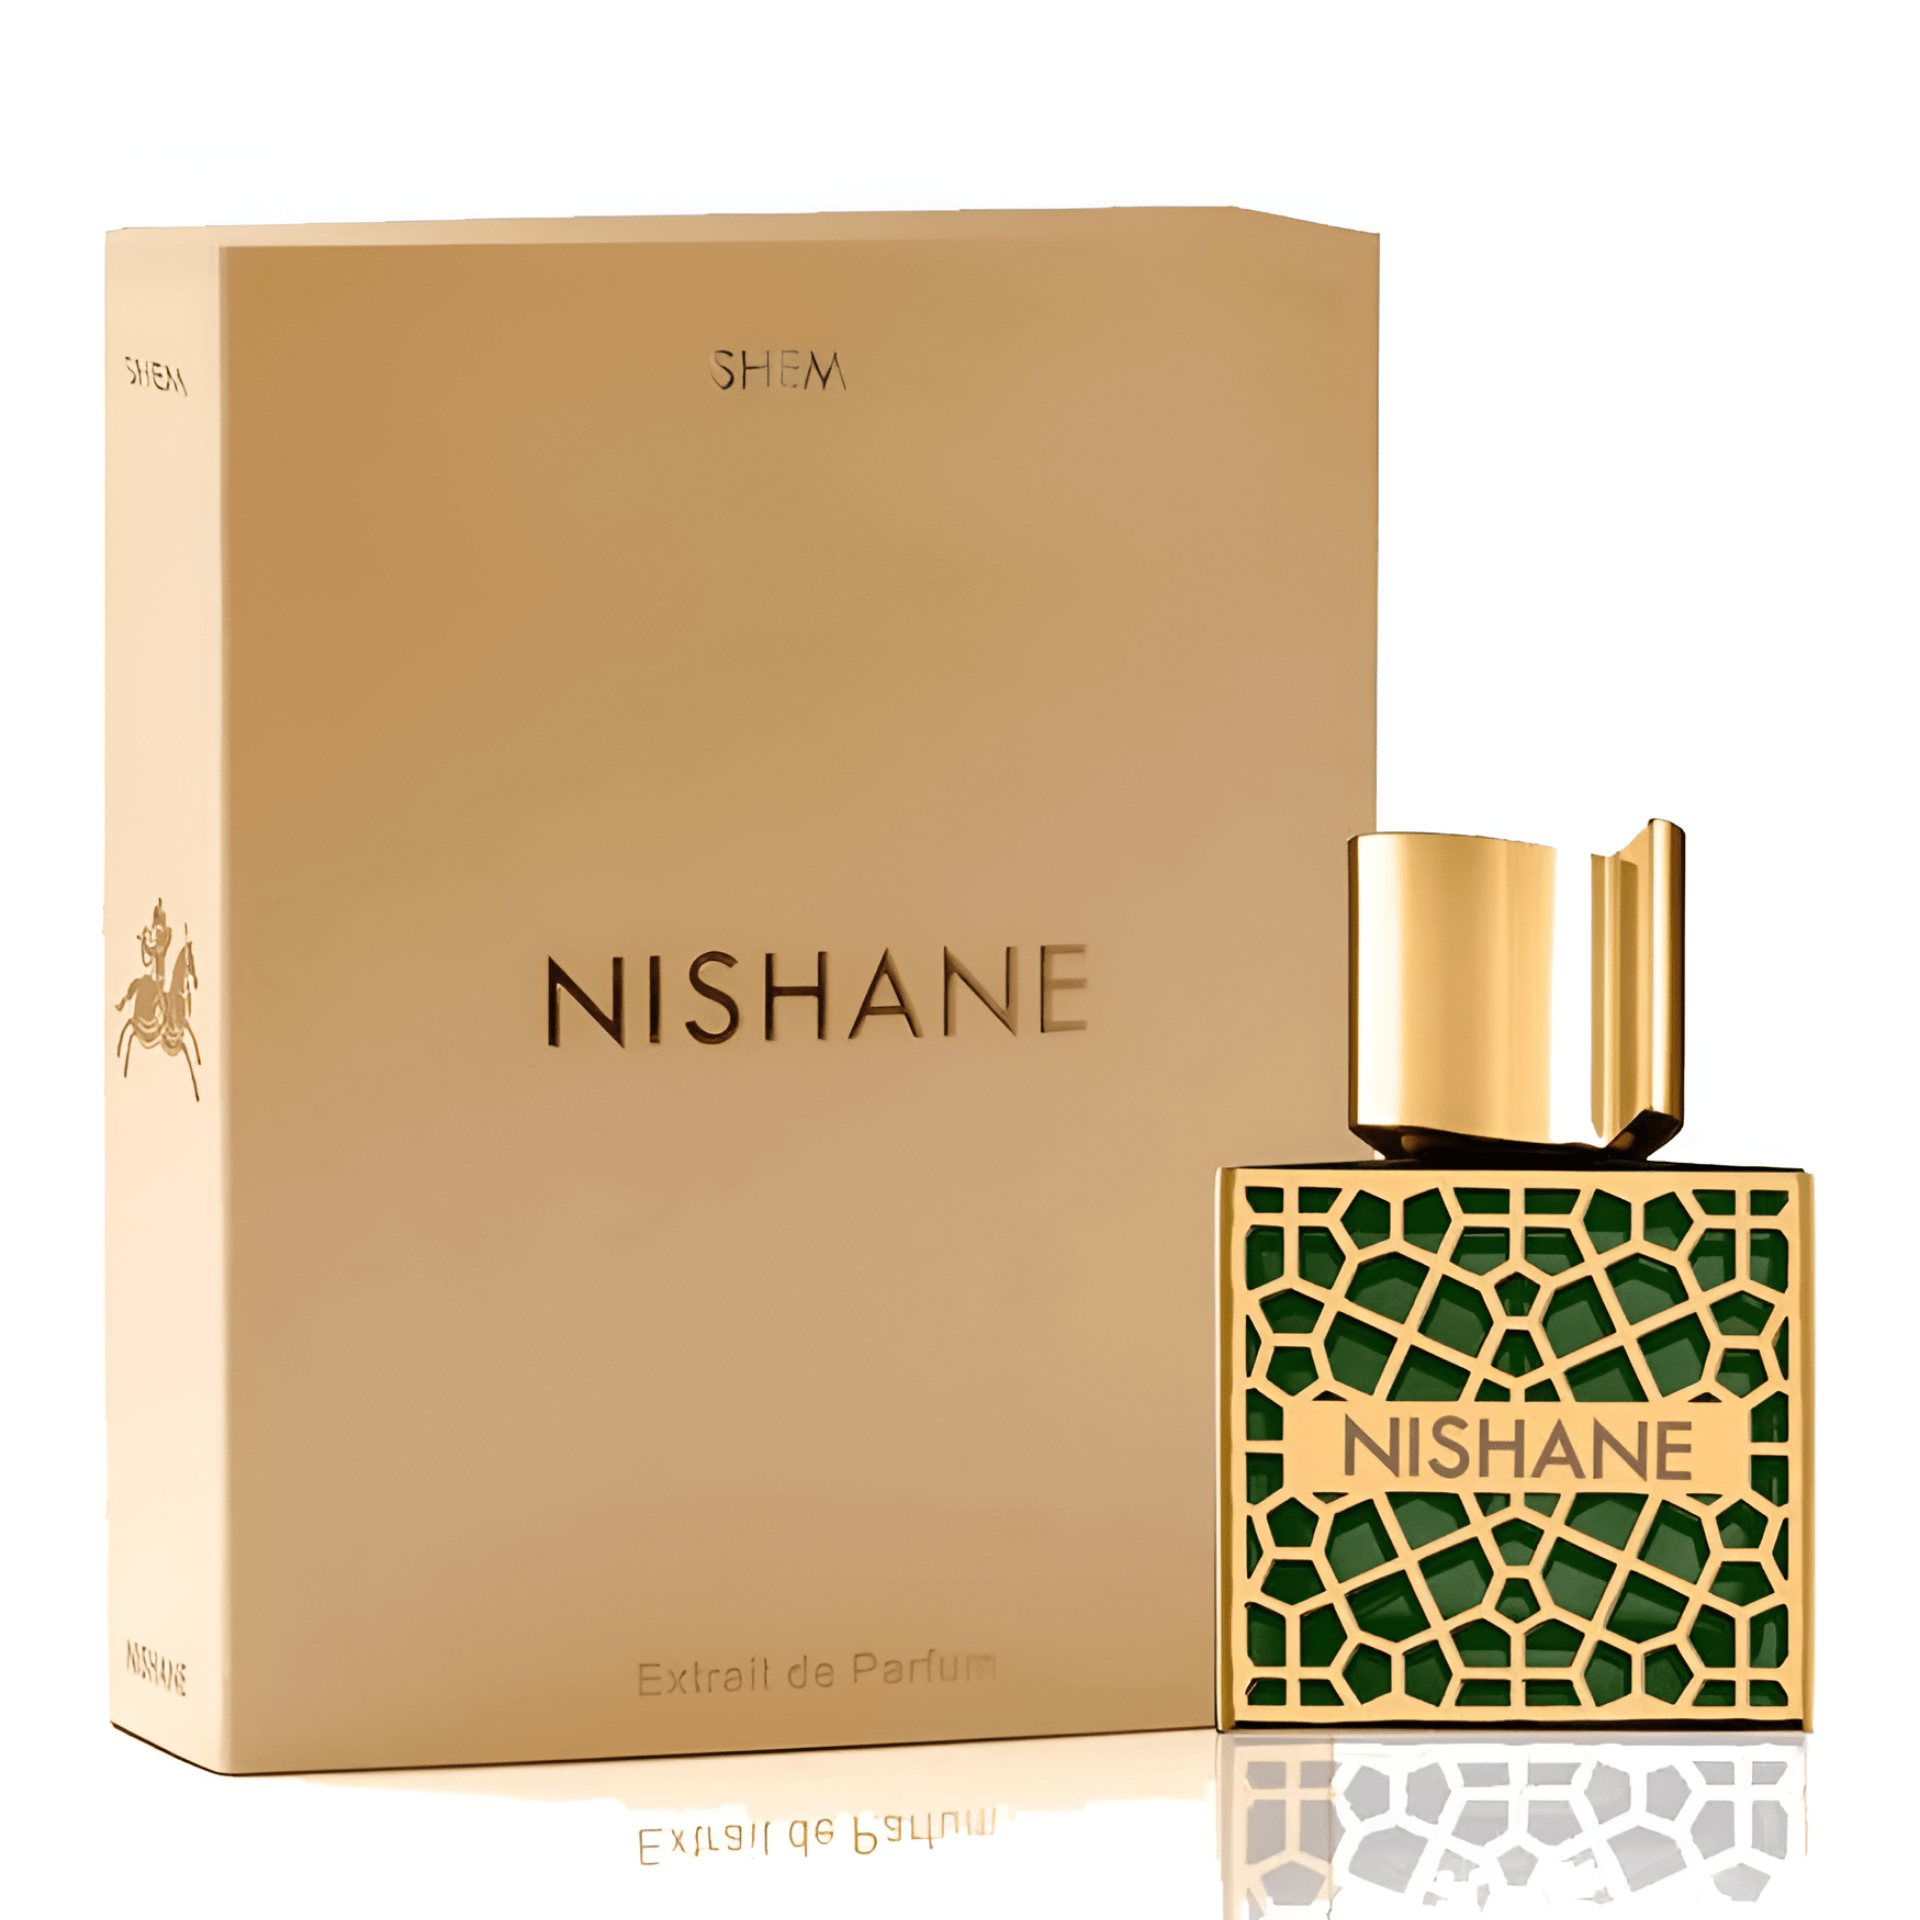 Nishane Shem Extrait De Parfum | My Perfume Shop Australia